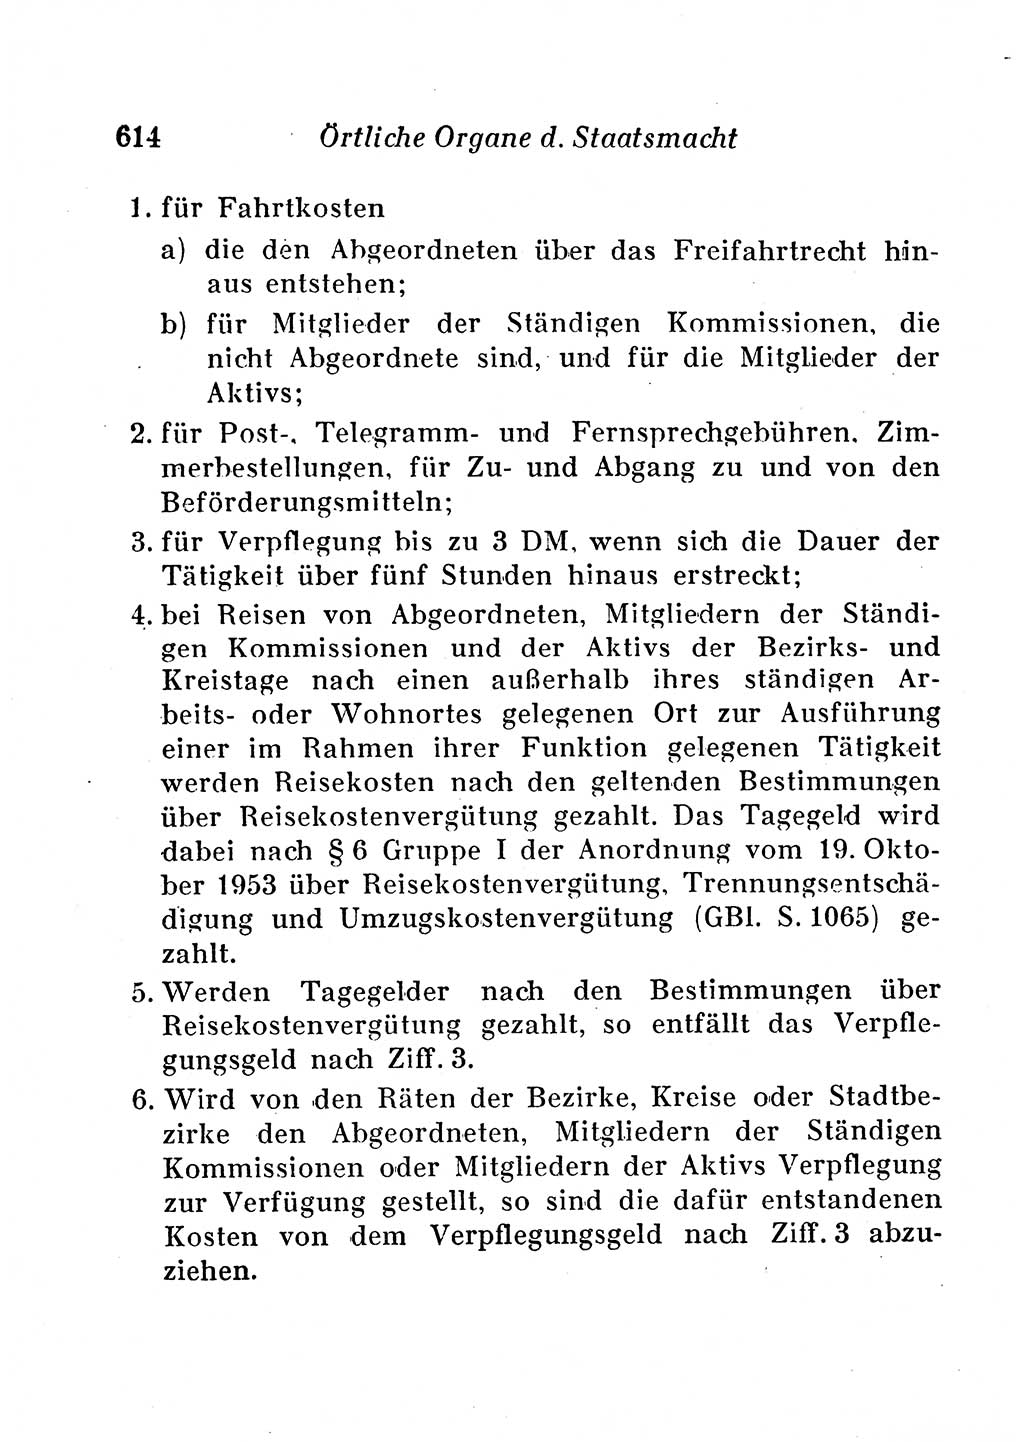 Staats- und verwaltungsrechtliche Gesetze der Deutschen Demokratischen Republik (DDR) 1958, Seite 614 (StVerwR Ges. DDR 1958, S. 614)